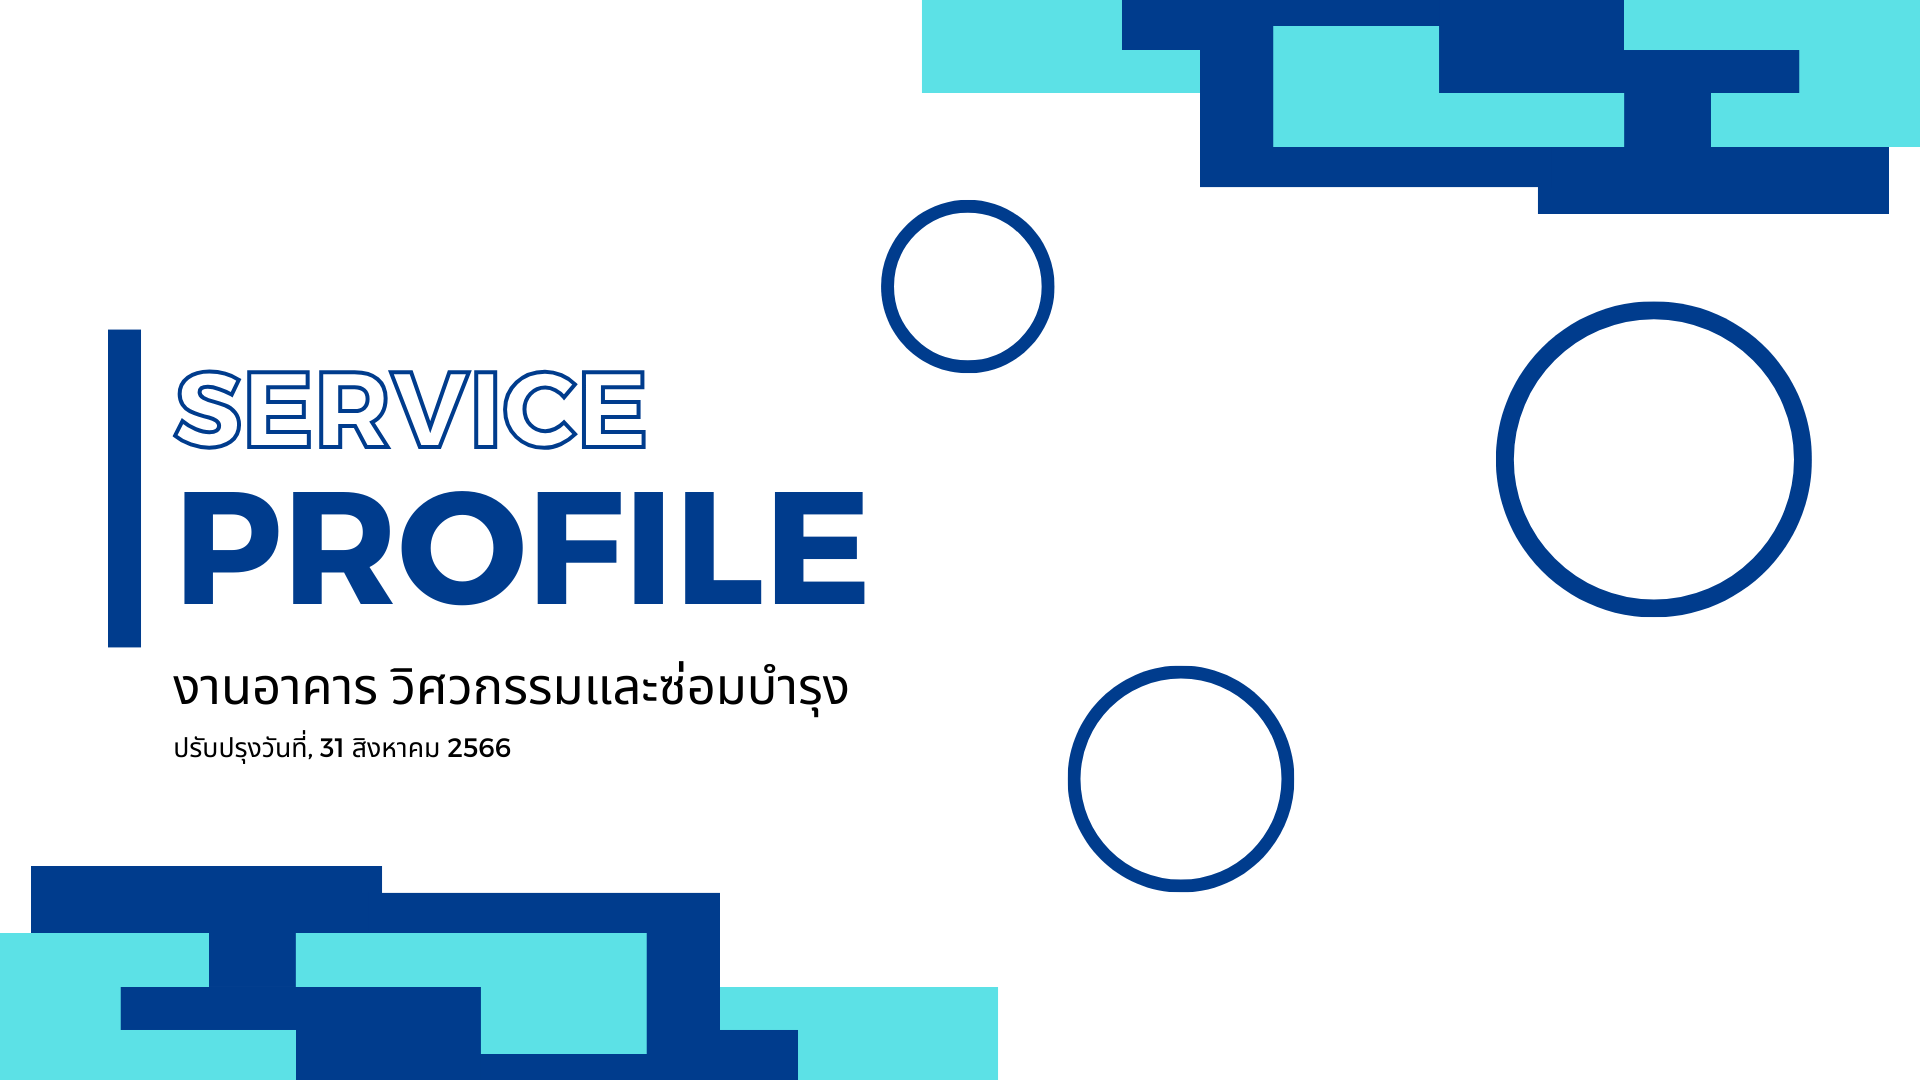 Service Profile